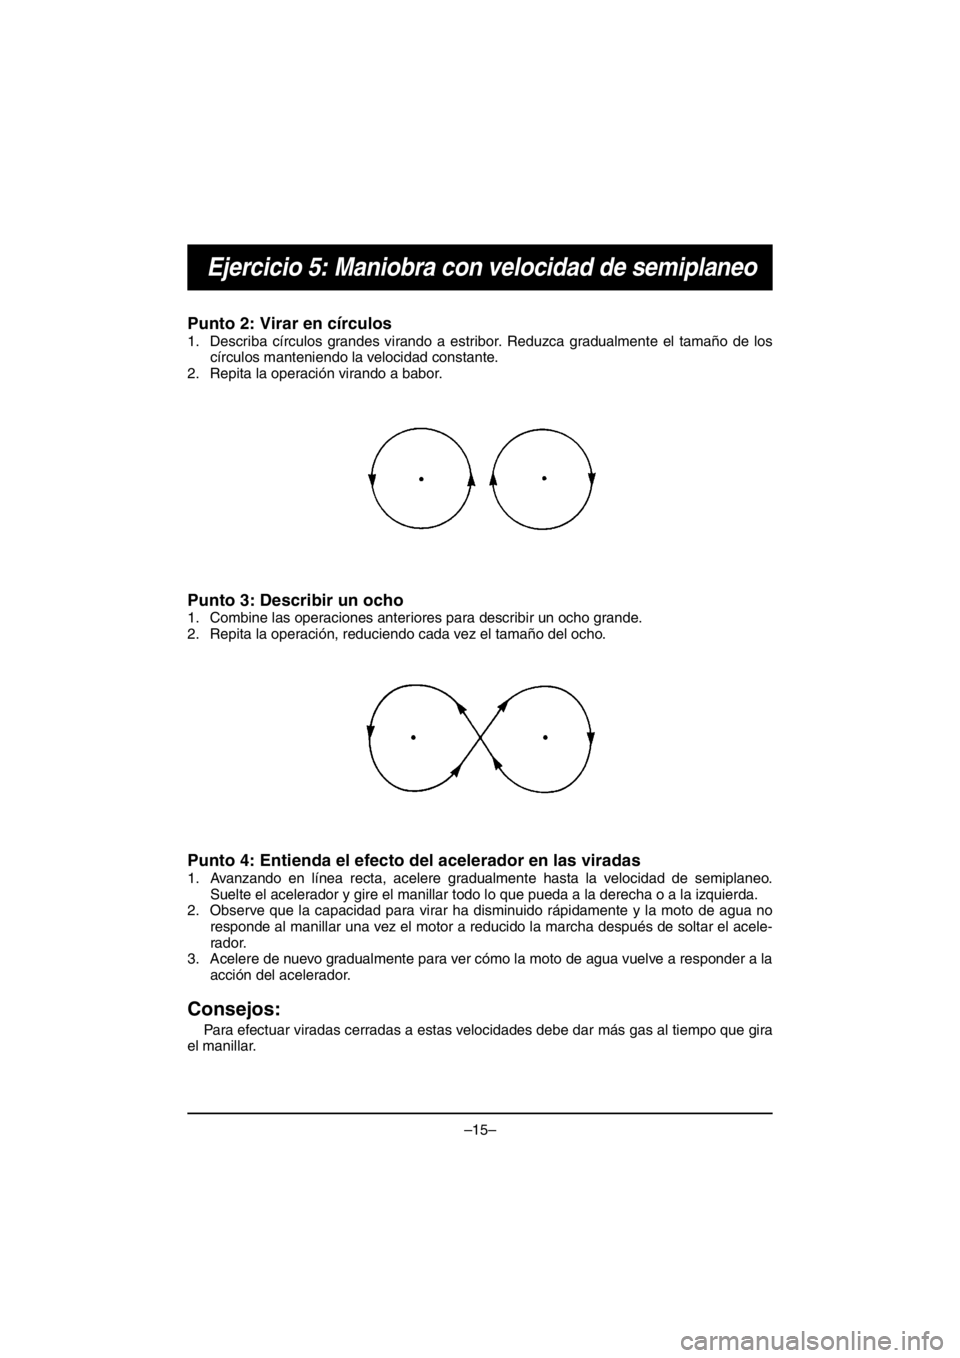 YAMAHA V1 2016  Manuale duso (in Italian) –15–
Ejercicio 5: Maniobra con velocidad de semiplaneo
Punto 2: Virar en círculos 
1. Describa círculos grandes virando a estribor. Reduzca gradualmente el tamaño de los
círculos manteniendo l